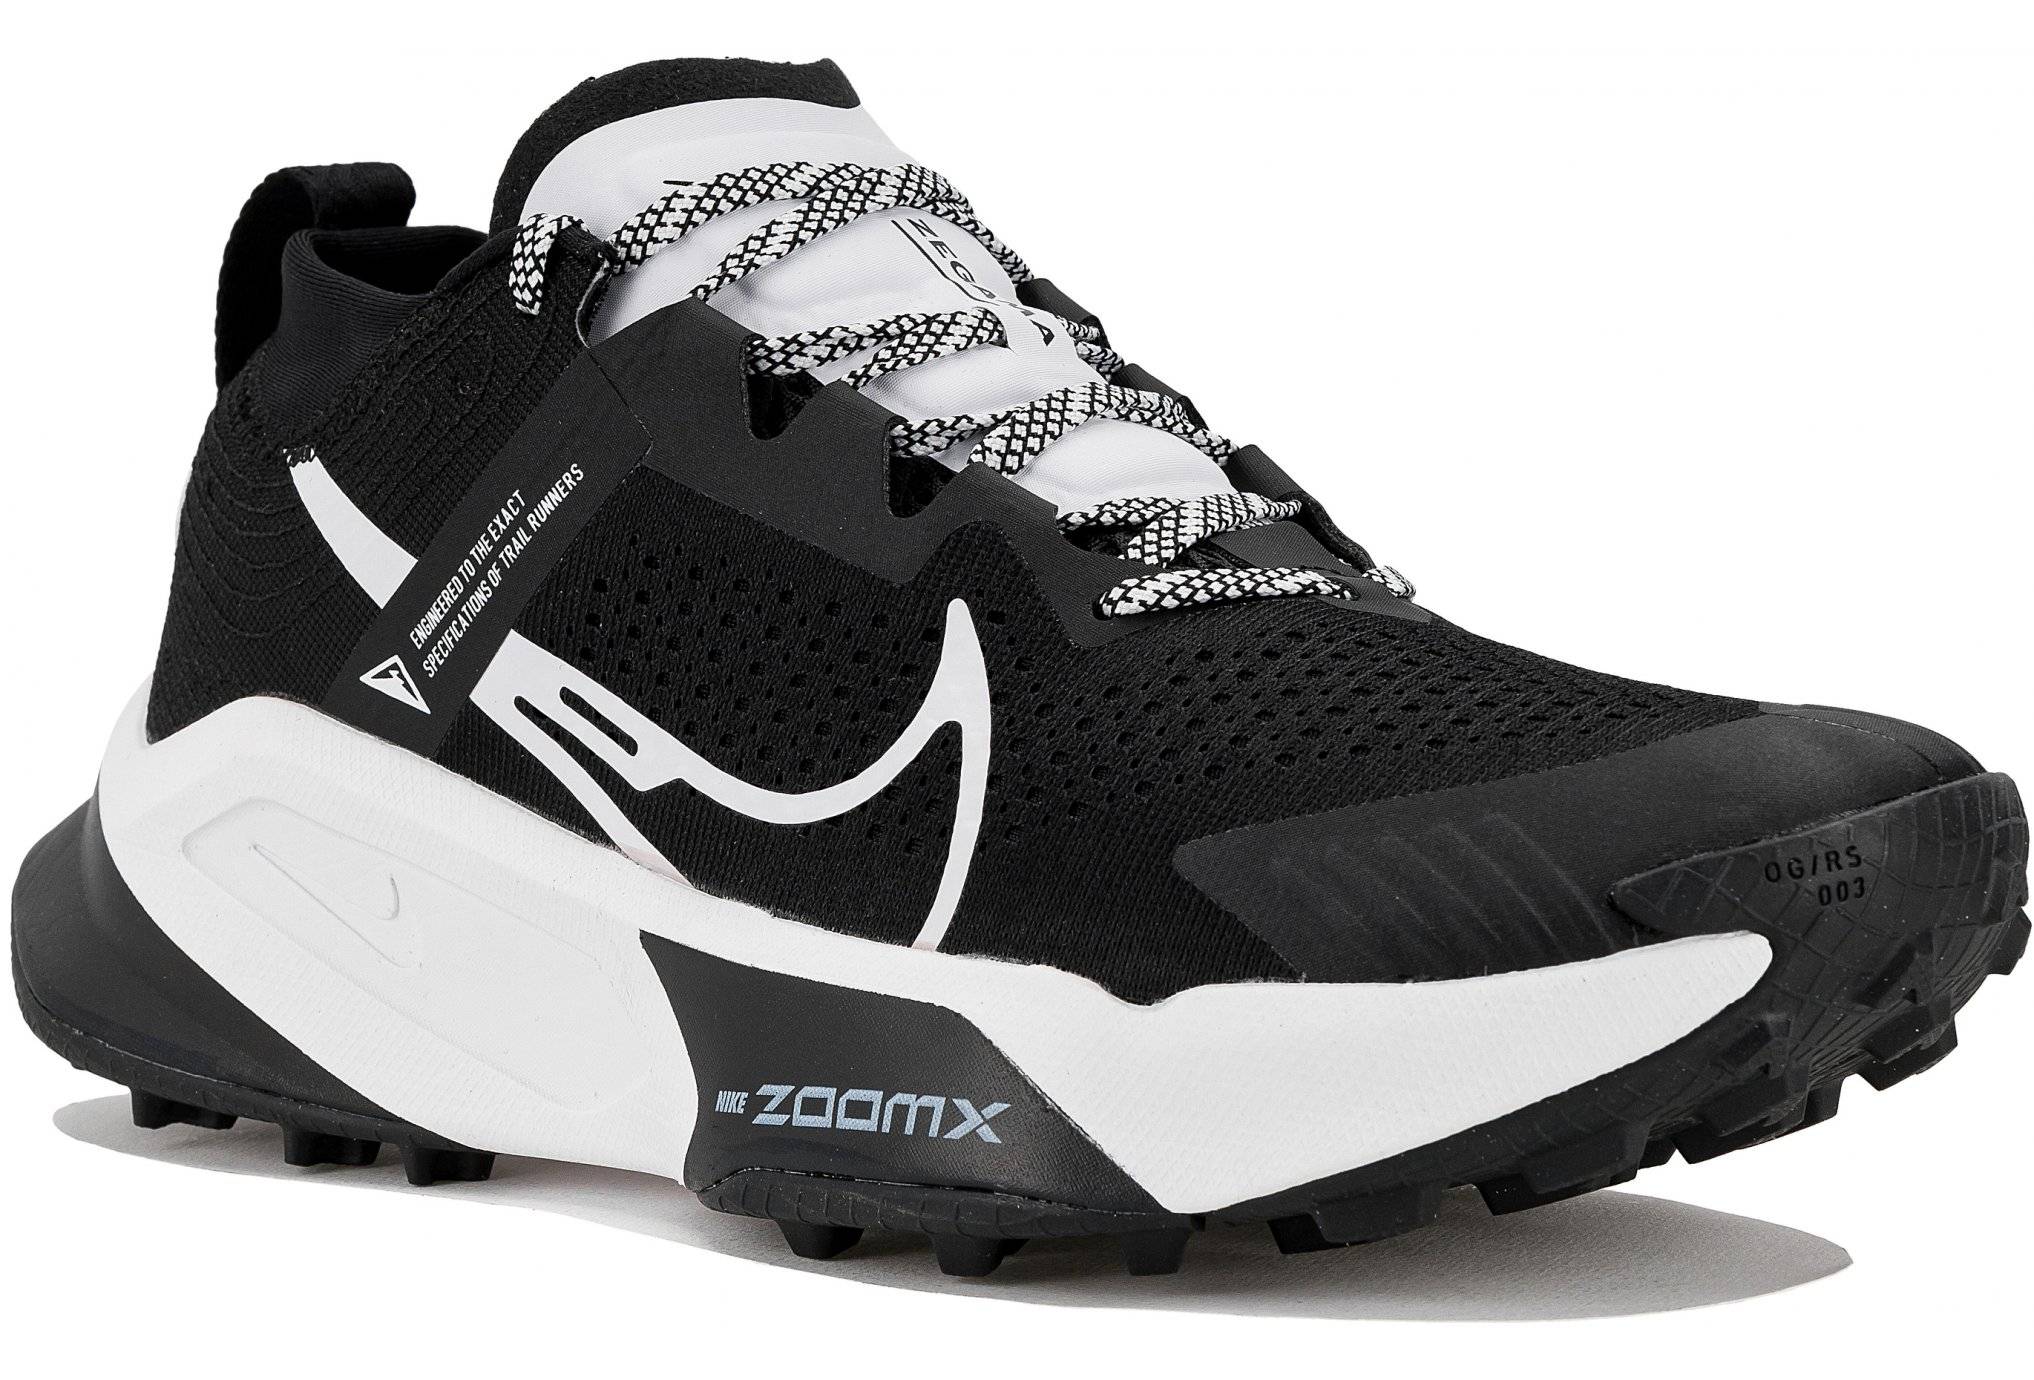 Nike ZoomX Zegama M 